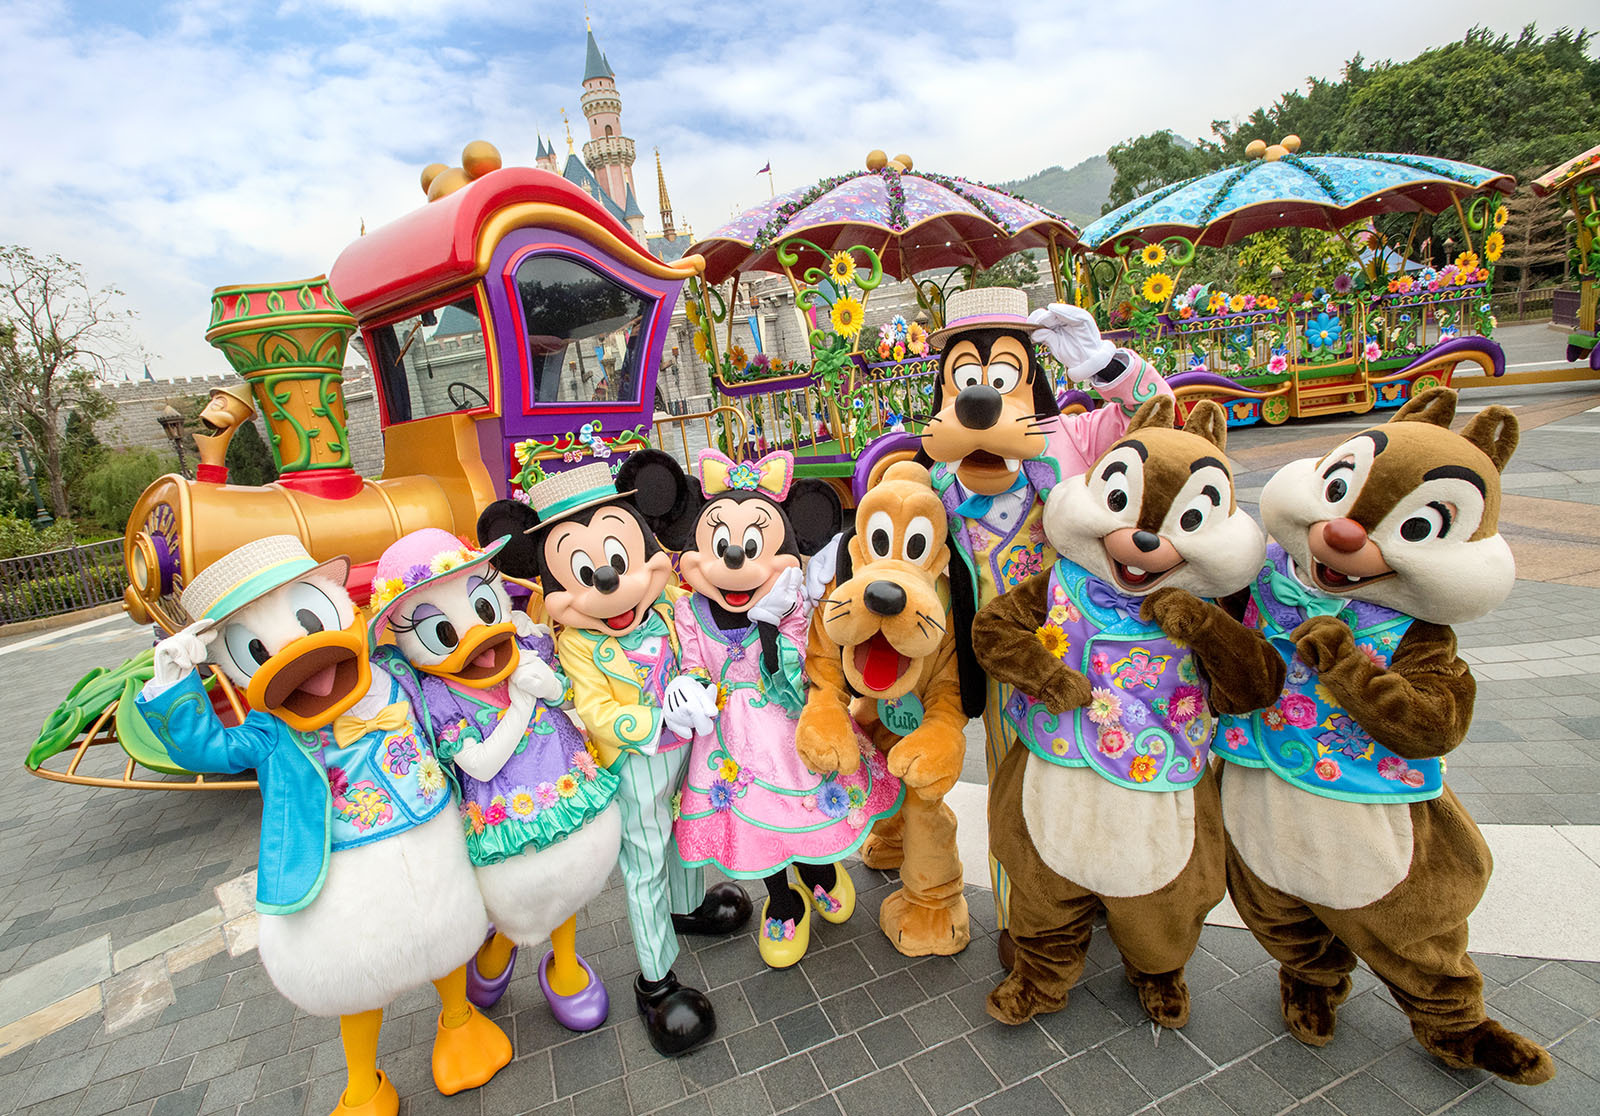 Muốn có một chuyến đi đến Disneyland Hồng Kông tuyệt vời hơn bao giờ hết? Hãy tìm hiểu và áp dụng các hướng dẫn tối ưu để tận dụng mọi khả năng tại đây. Điều chỉnh lịch trình, tìm hiểu những kinh nghiệm từ các du khách đi trước, và tận hưởng chuyến đi đầy thú vị tại Disneyland Hồng Kông.